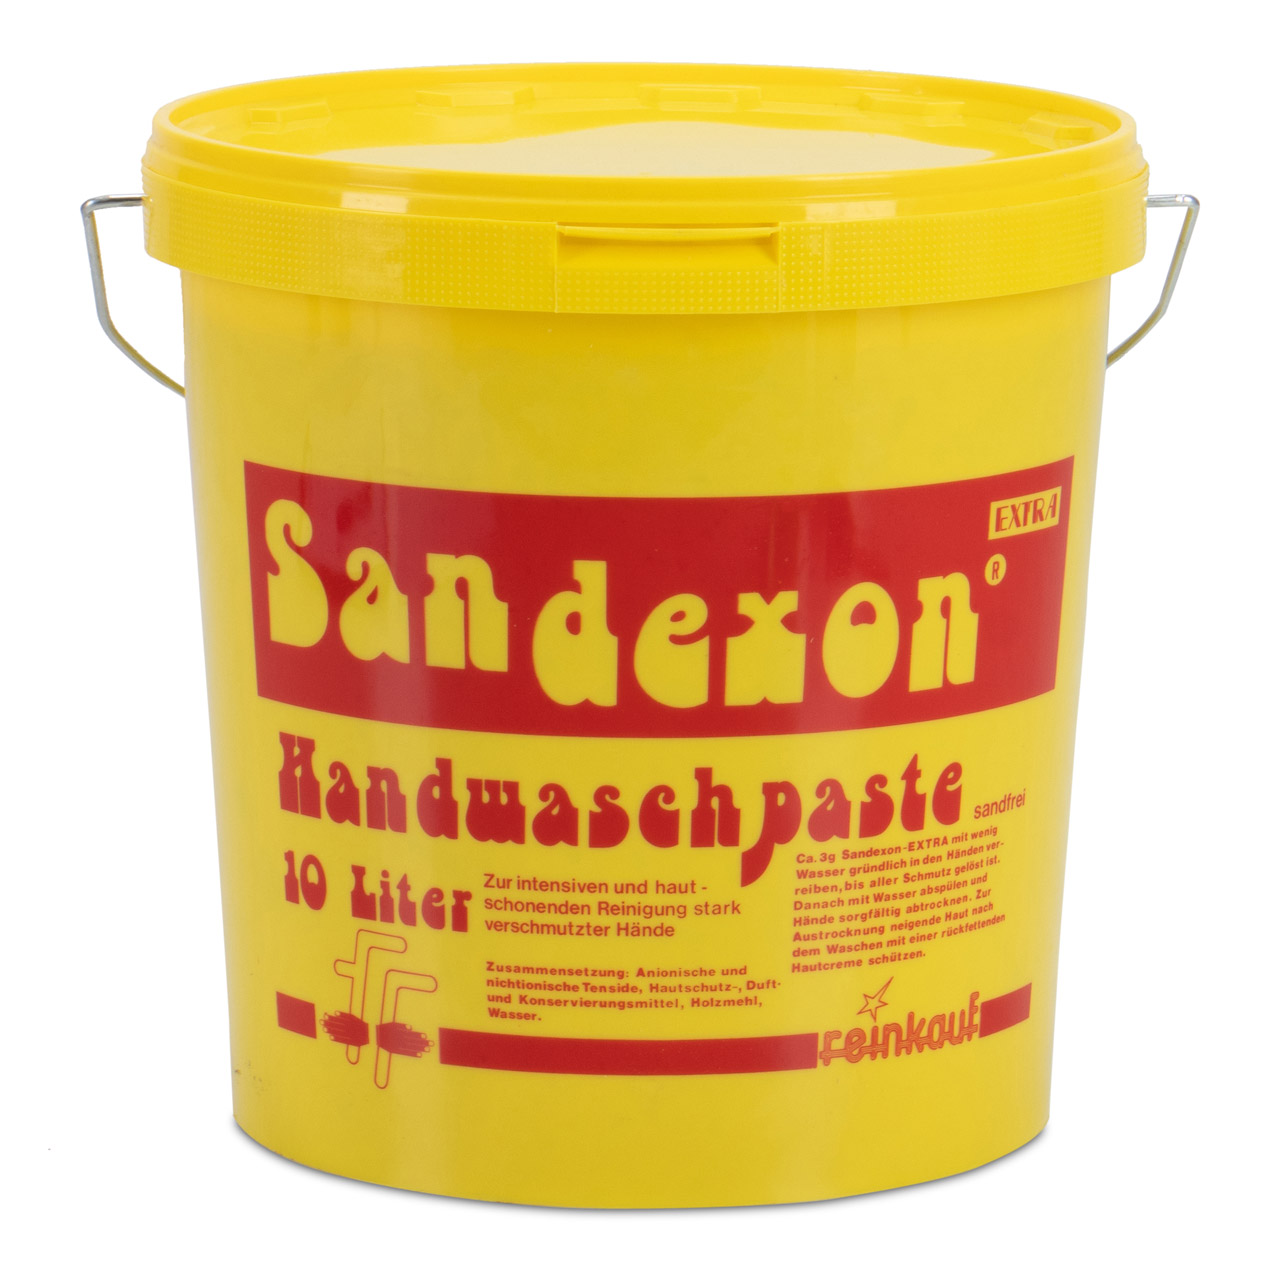 SANDEXON Handwaschpaste Handwaschcreme Handseife Handreiniger Seife 10 Liter